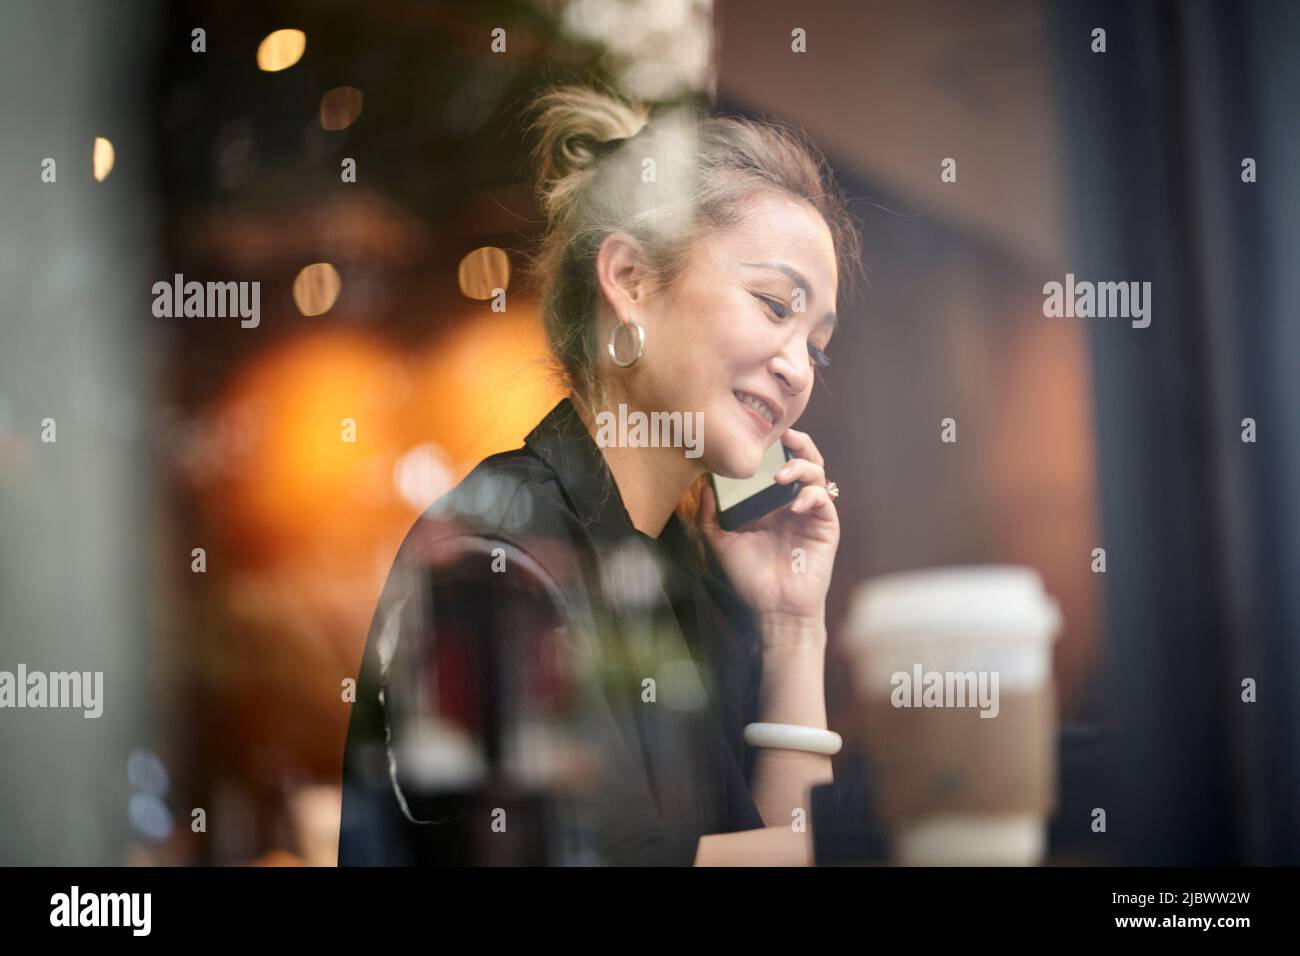 asiatische Frau, die im Café chattet und sich mit dem Handy unterhält Stockfoto